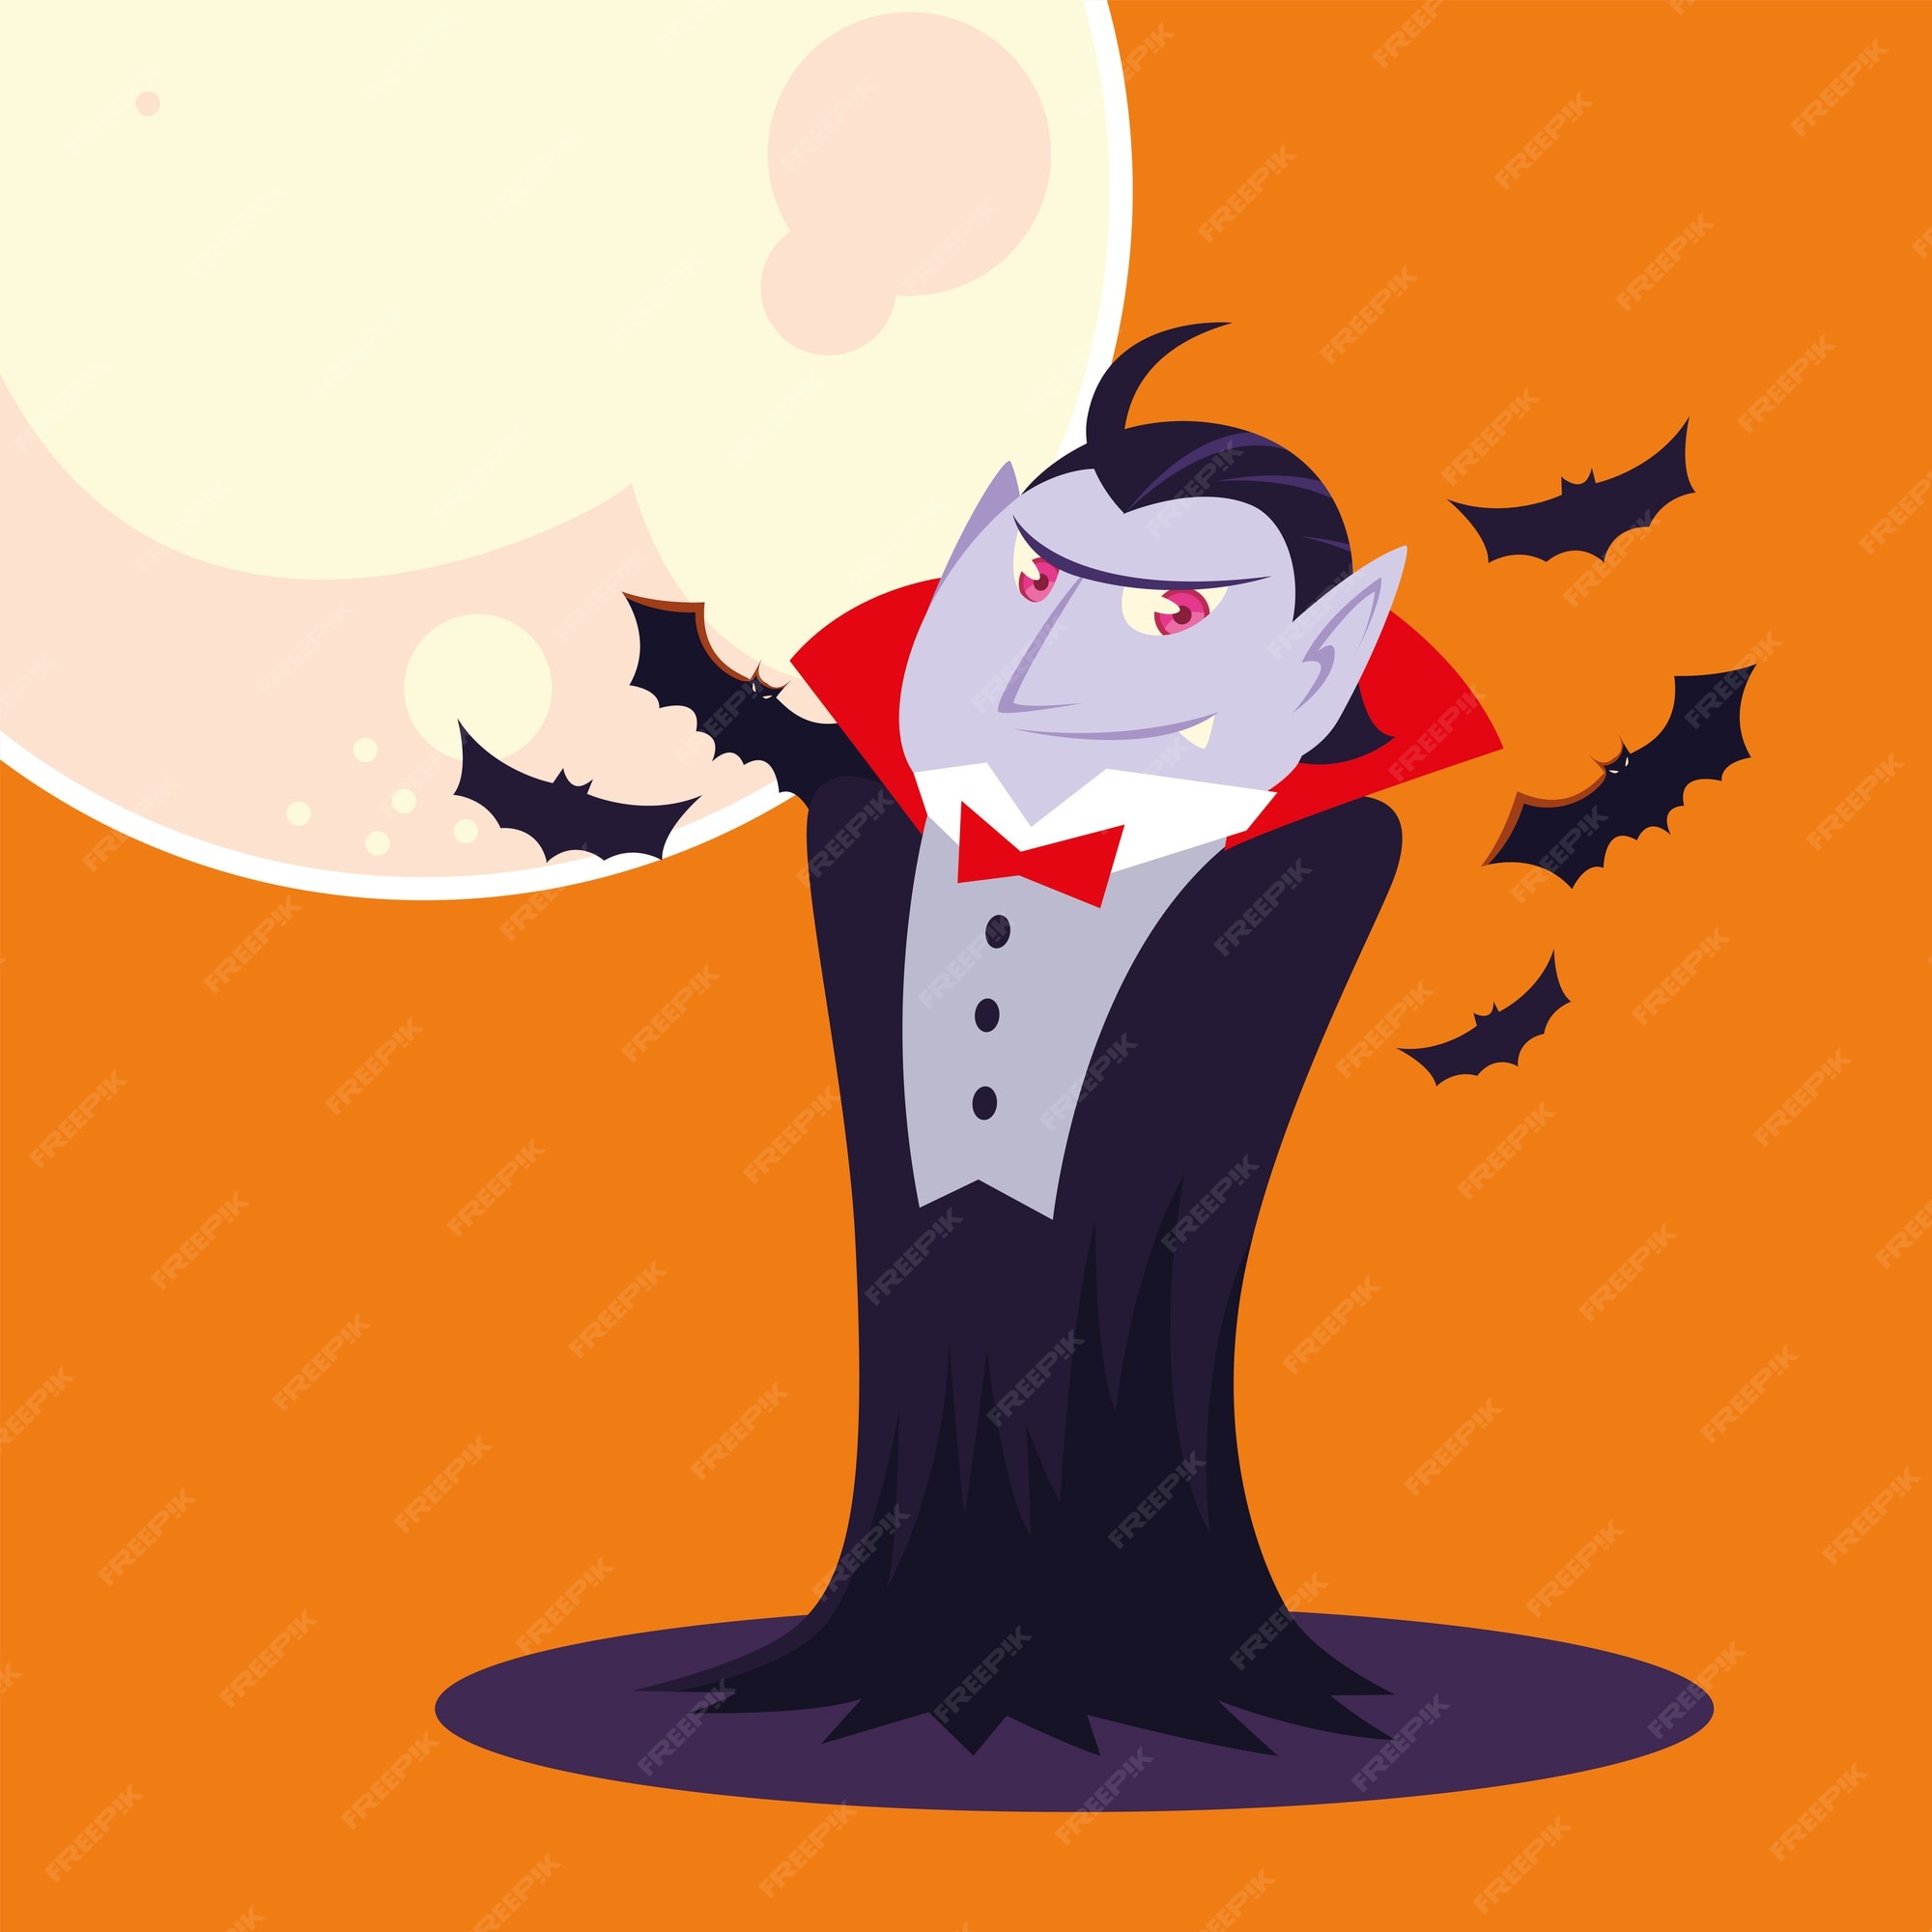 Dibujos animados de vampiros de halloween con diseño de luna, vacaciones y  tema aterrador | Vector Premium